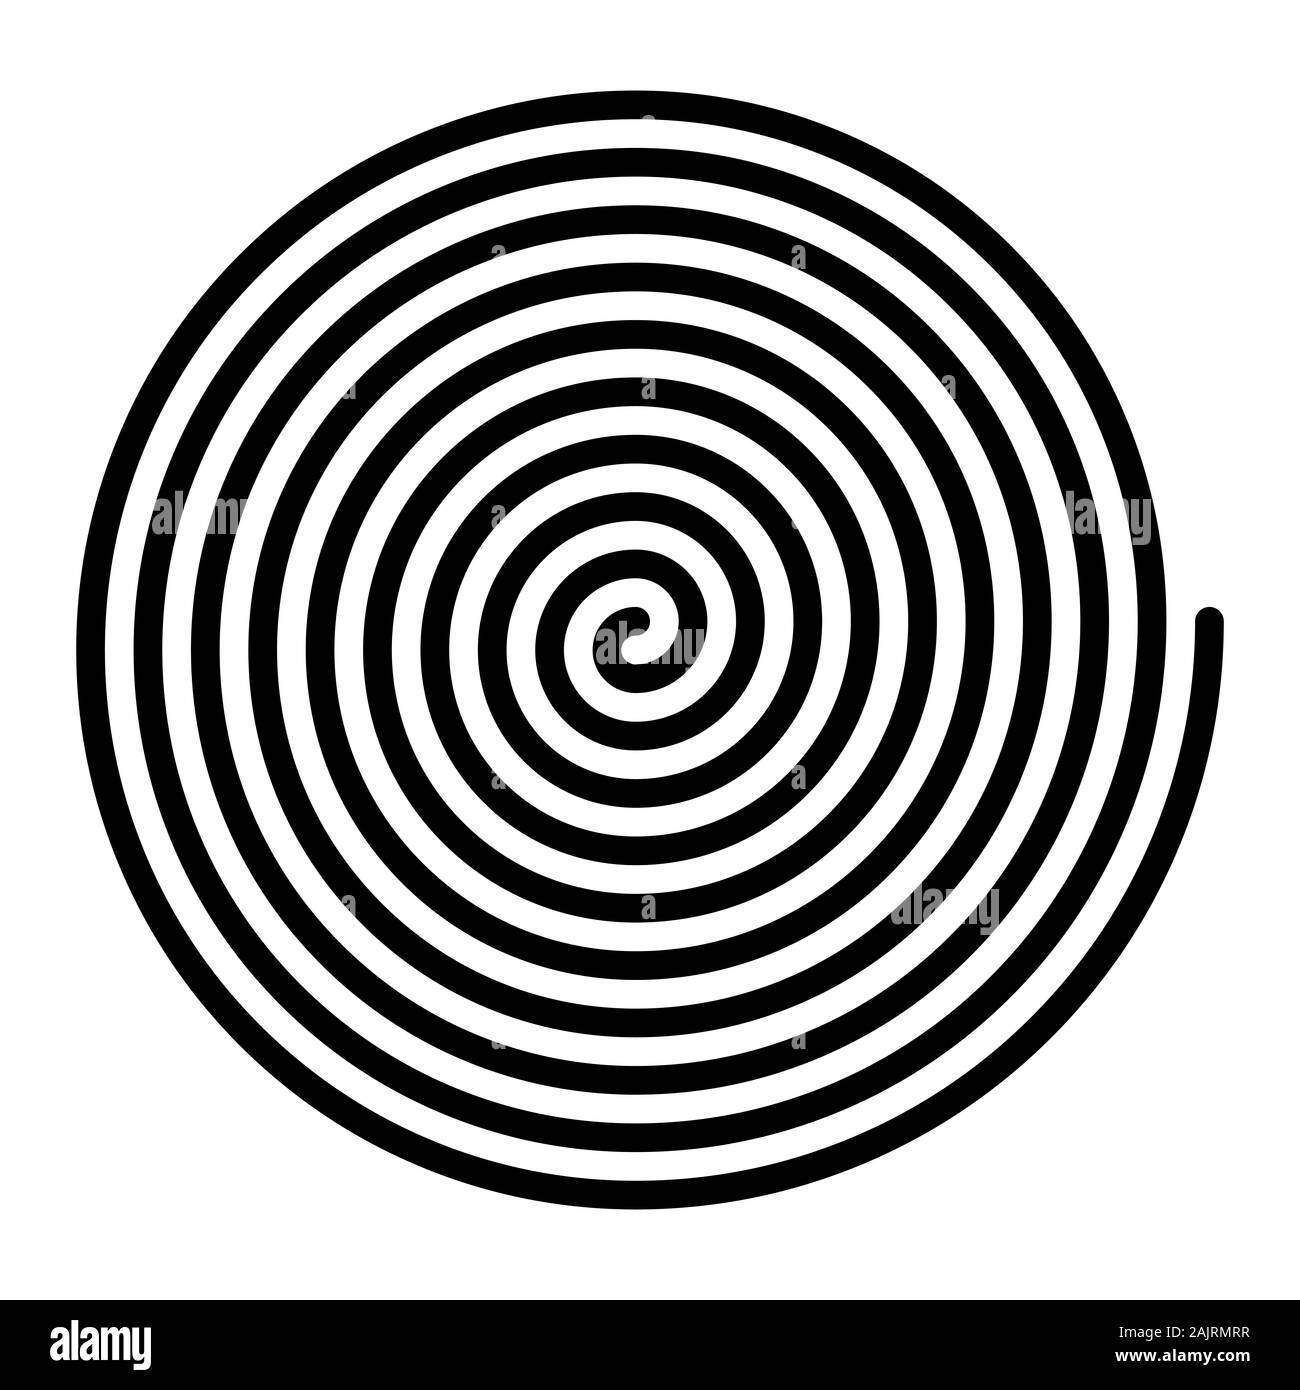 Spirale linéaires de grande taille. De couleur noir en spirale d'Archimède avec dix turnings d'un bras d'une spirale de l'arithmétique, en rotation avec une vitesse angulaire constante. Banque D'Images